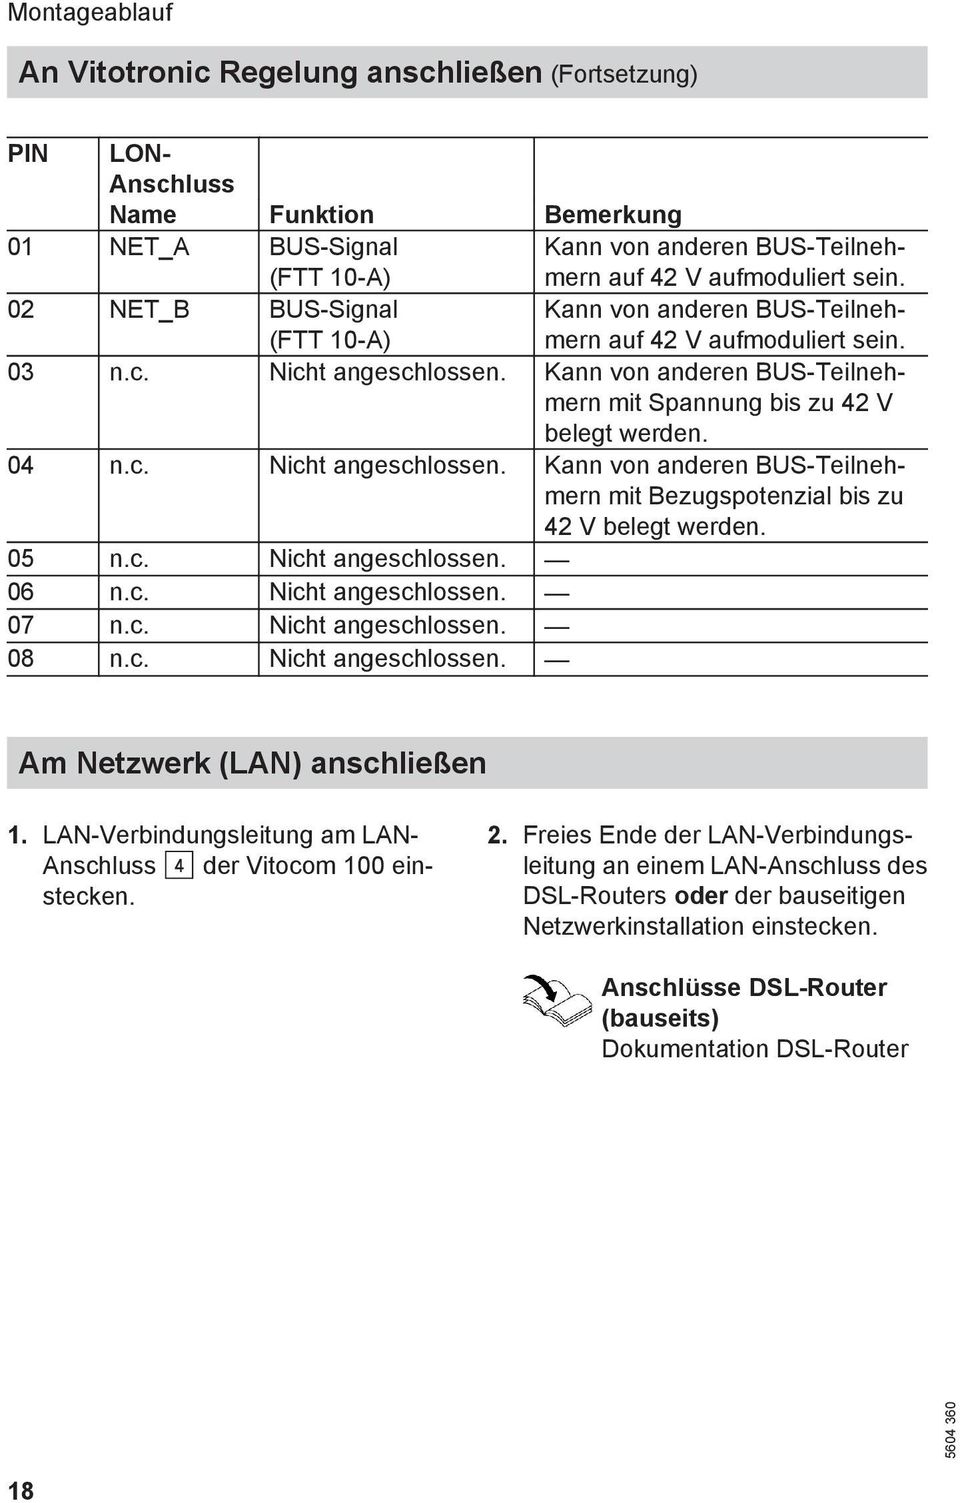 c. Nicht angeschlossen. Kann von anderen BUS-Teilnehmern mit Bezugspotenzial bis zu 42 V belegt werden. 05 n.c. Nicht angeschlossen. 06 n.c. Nicht angeschlossen. 07 n.c. Nicht angeschlossen. 08 n.c. Nicht angeschlossen. Am Netzwerk (LAN) anschließen 1.